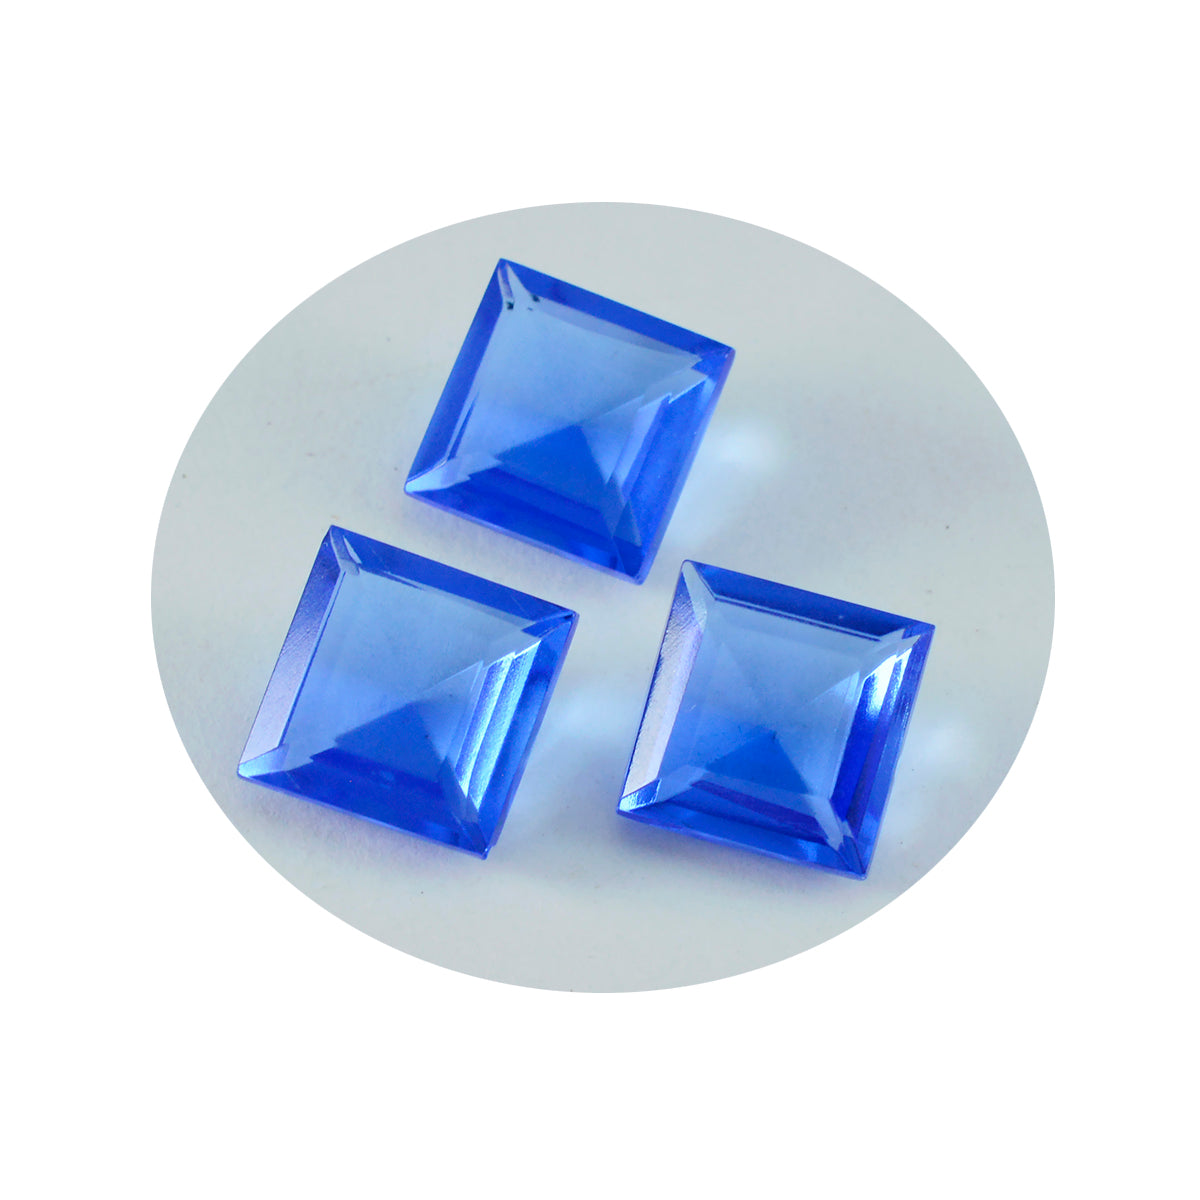 riyogems 1 шт. синий сапфир cz ограненный 14x14 мм квадратной формы, красивый качественный драгоценный камень